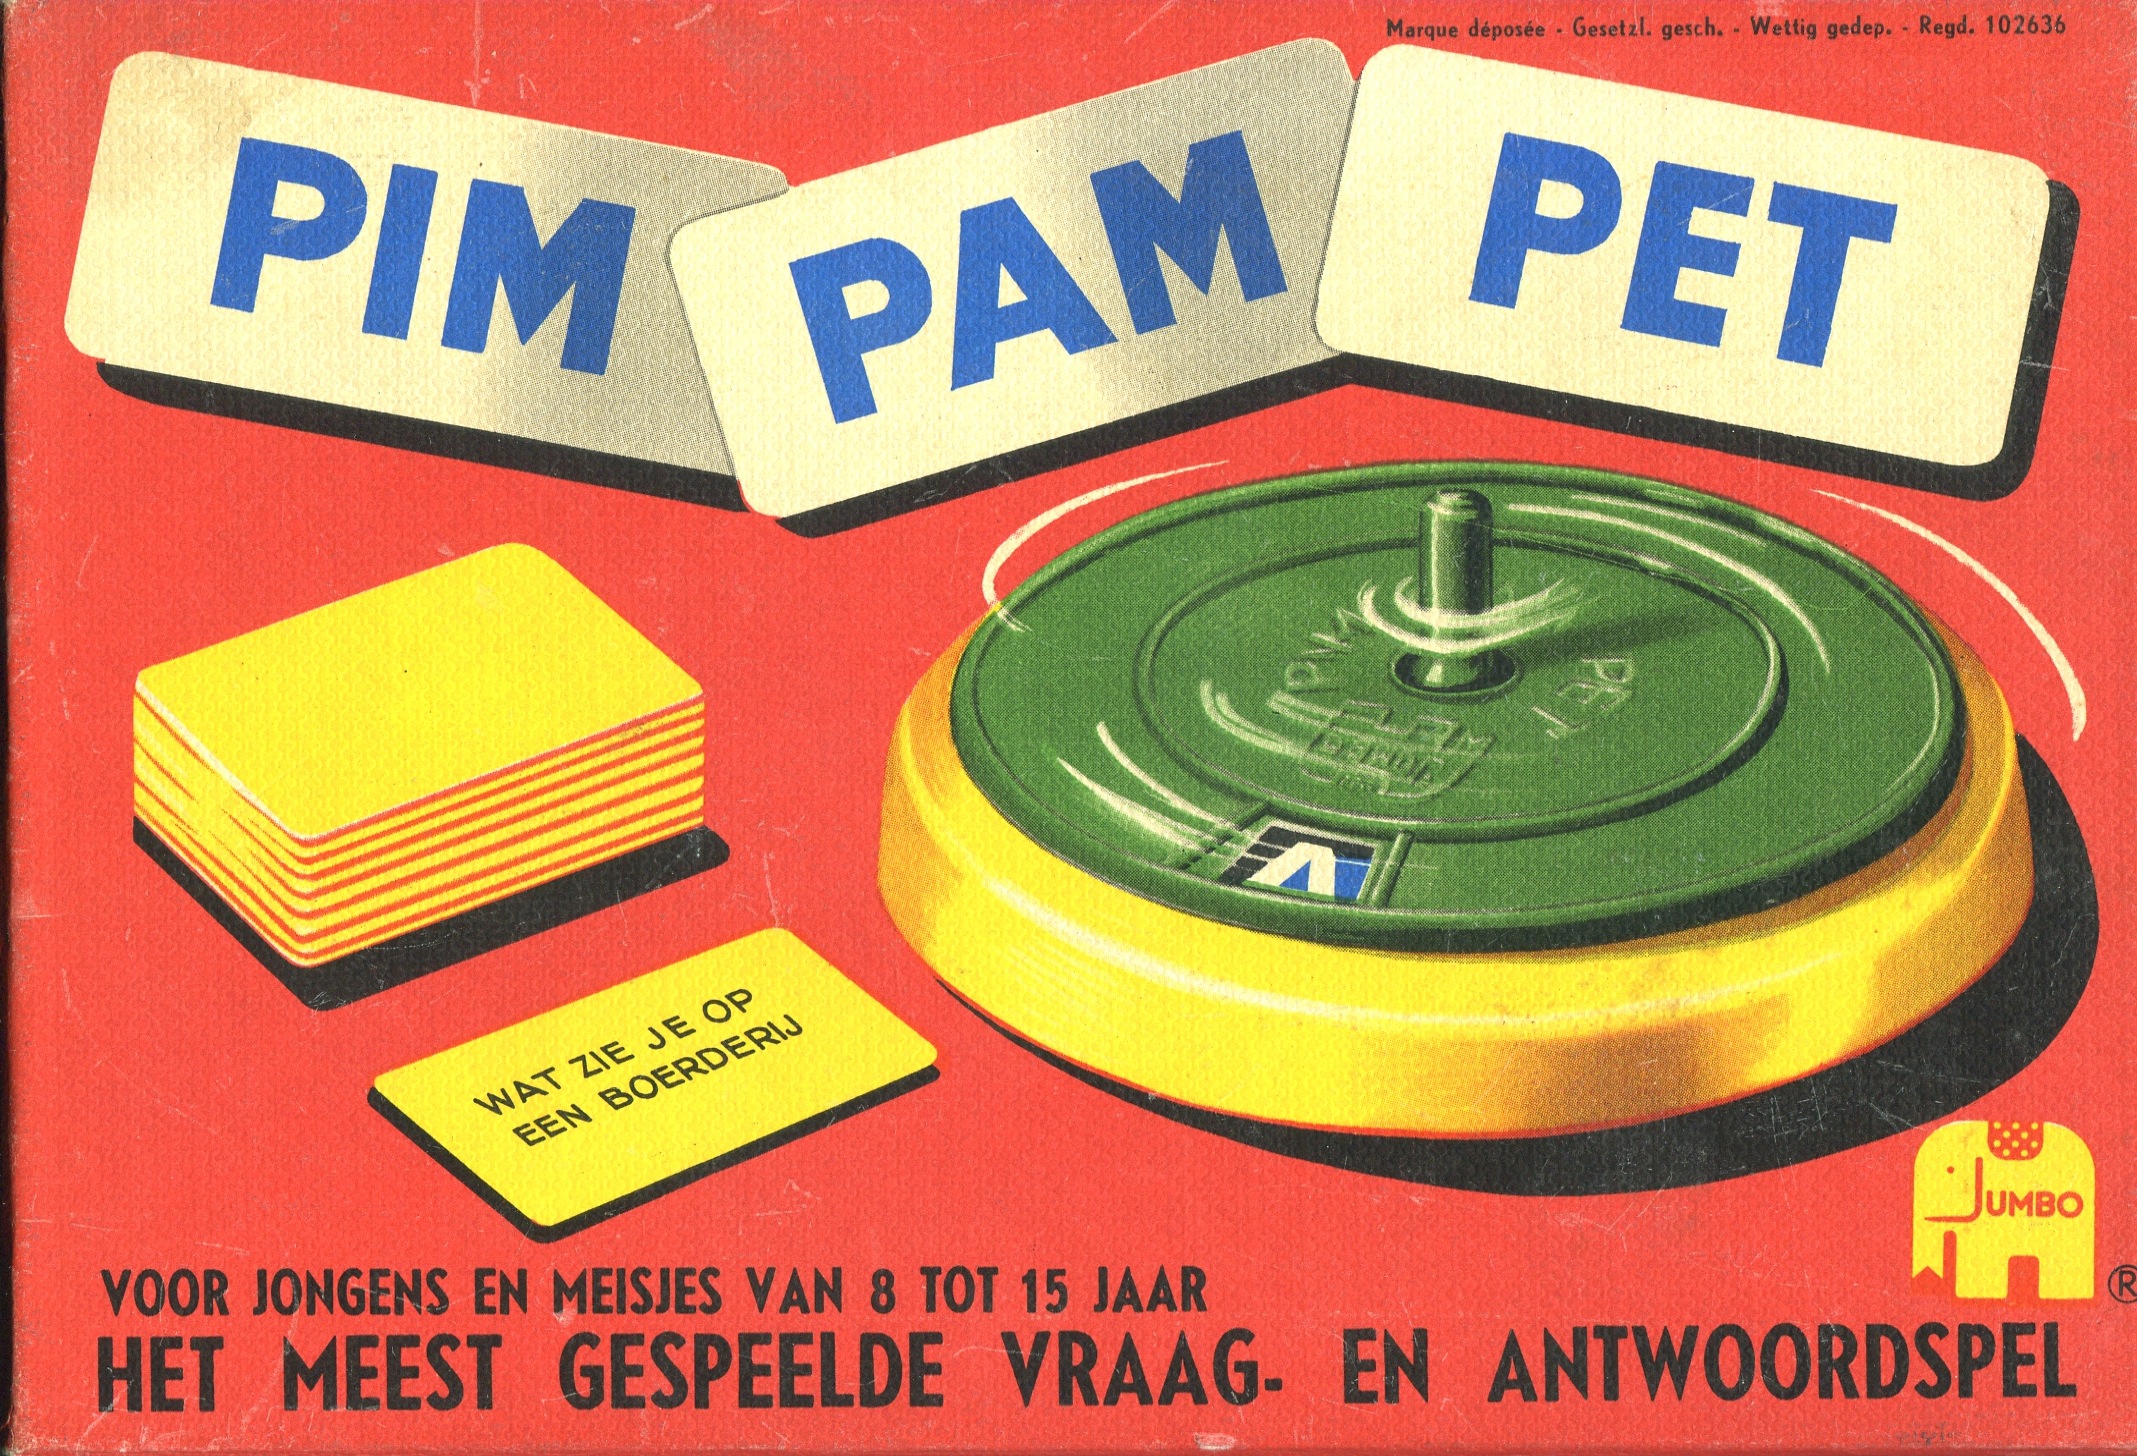 Pim Pam Pet